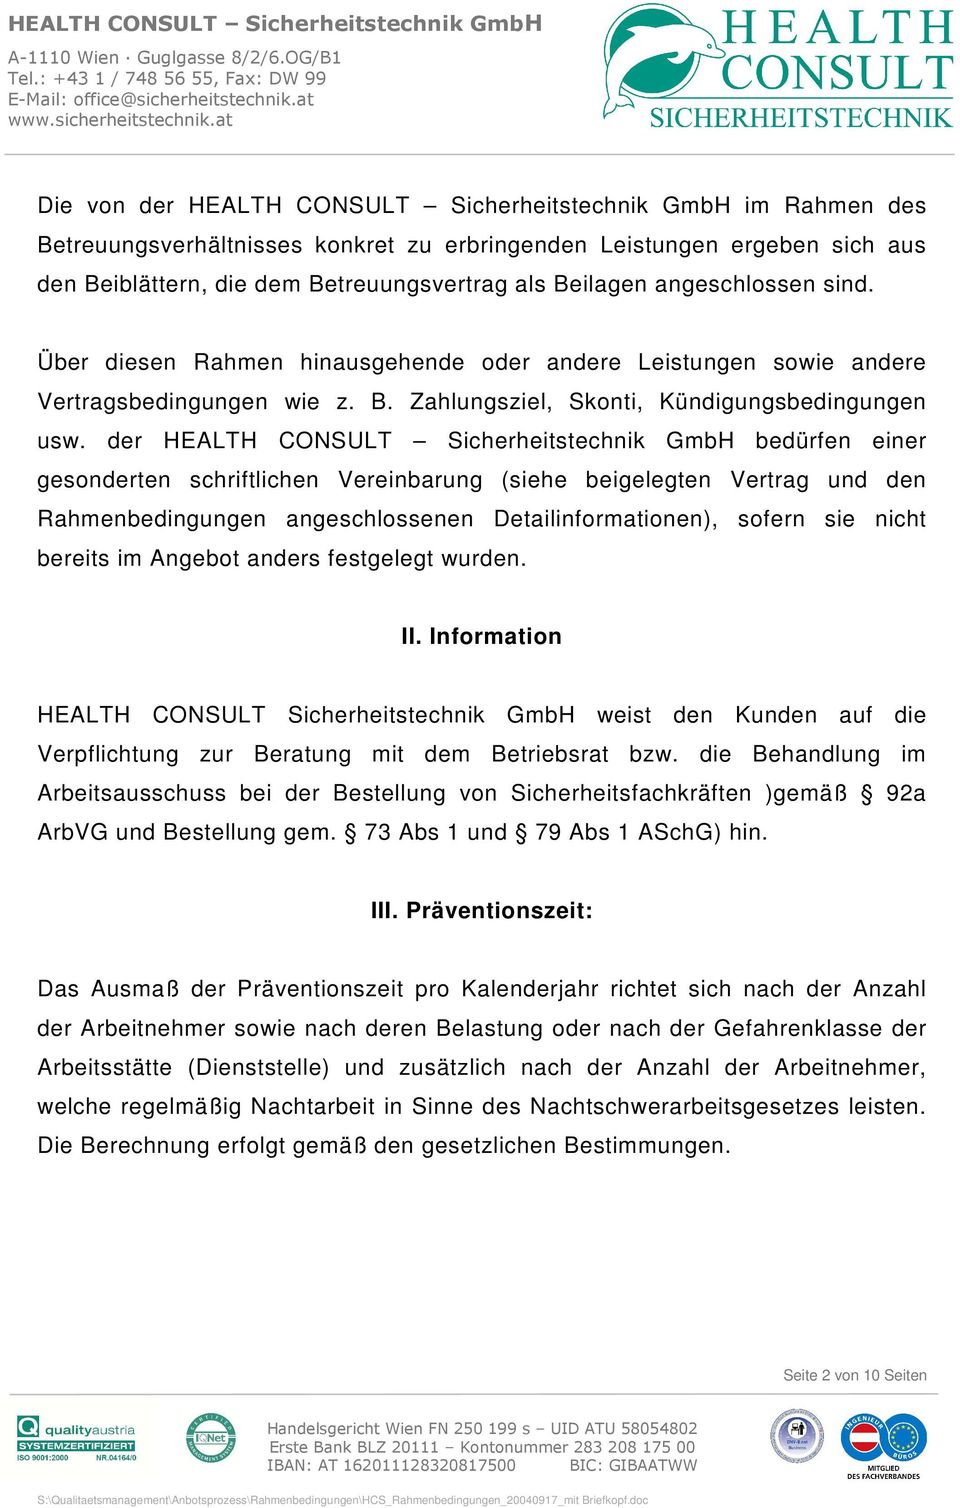 der HEALTH CONSULT Sicherheitstechnik GmbH bedürfen einer gesonderten schriftlichen Vereinbarung (siehe beigelegten Vertrag und den Rahmenbedingungen angeschlossenen Detailinformationen), sofern sie